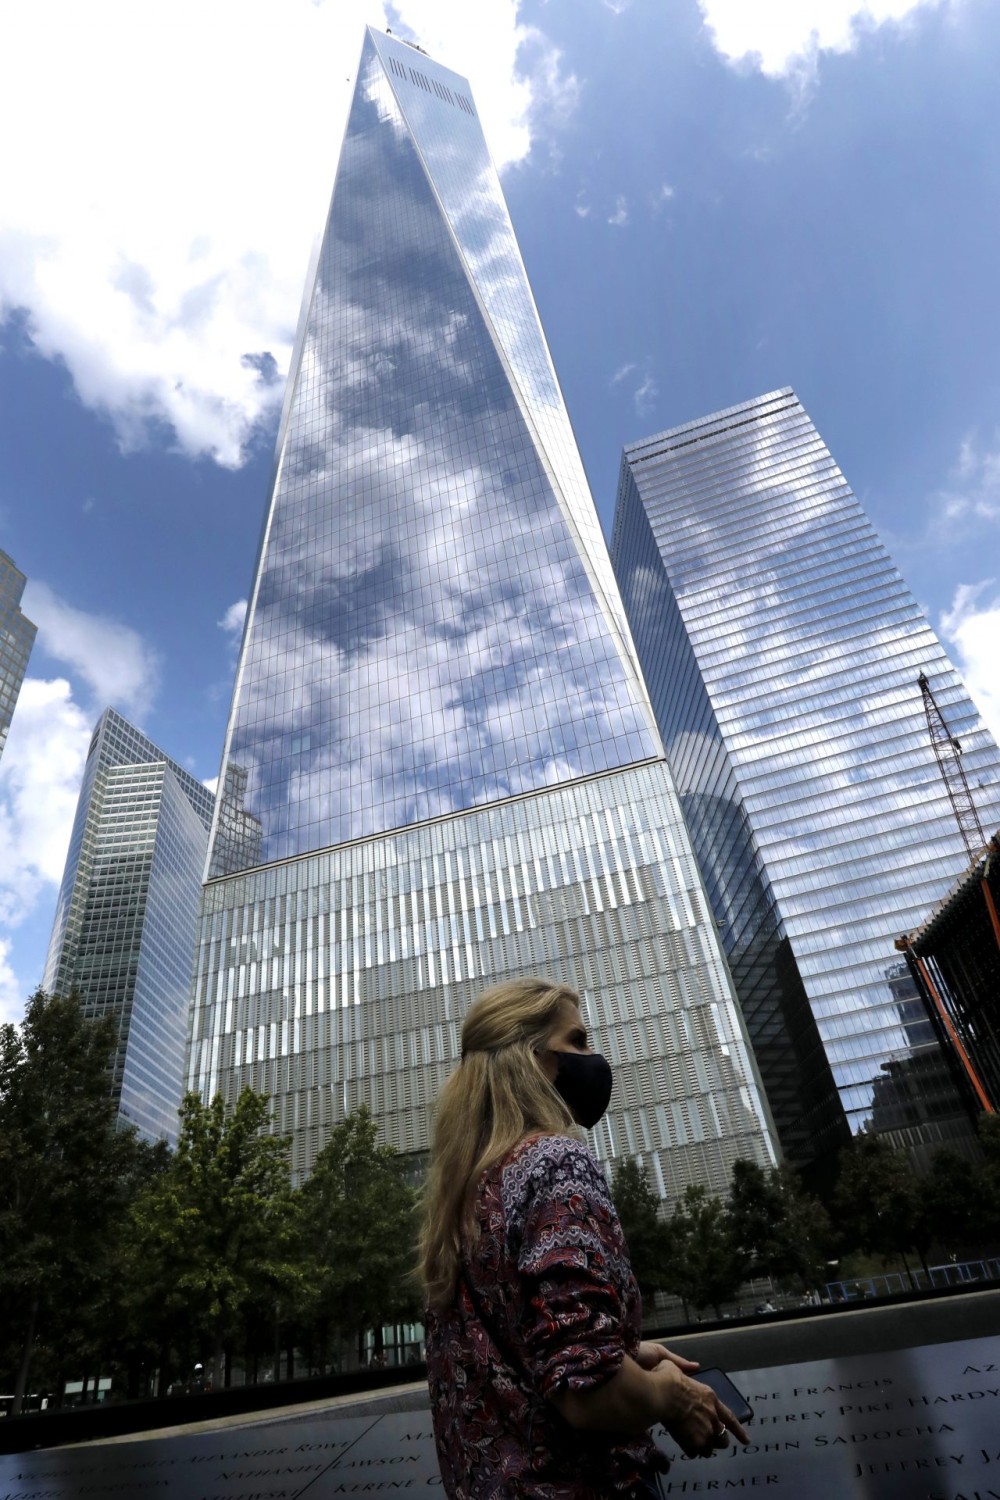 11η Σεπτεμβρίου &#8211; 20 χρόνια μετά: Η ημέρα των επιθέσεων που συγκλόνισαν την Αμερική